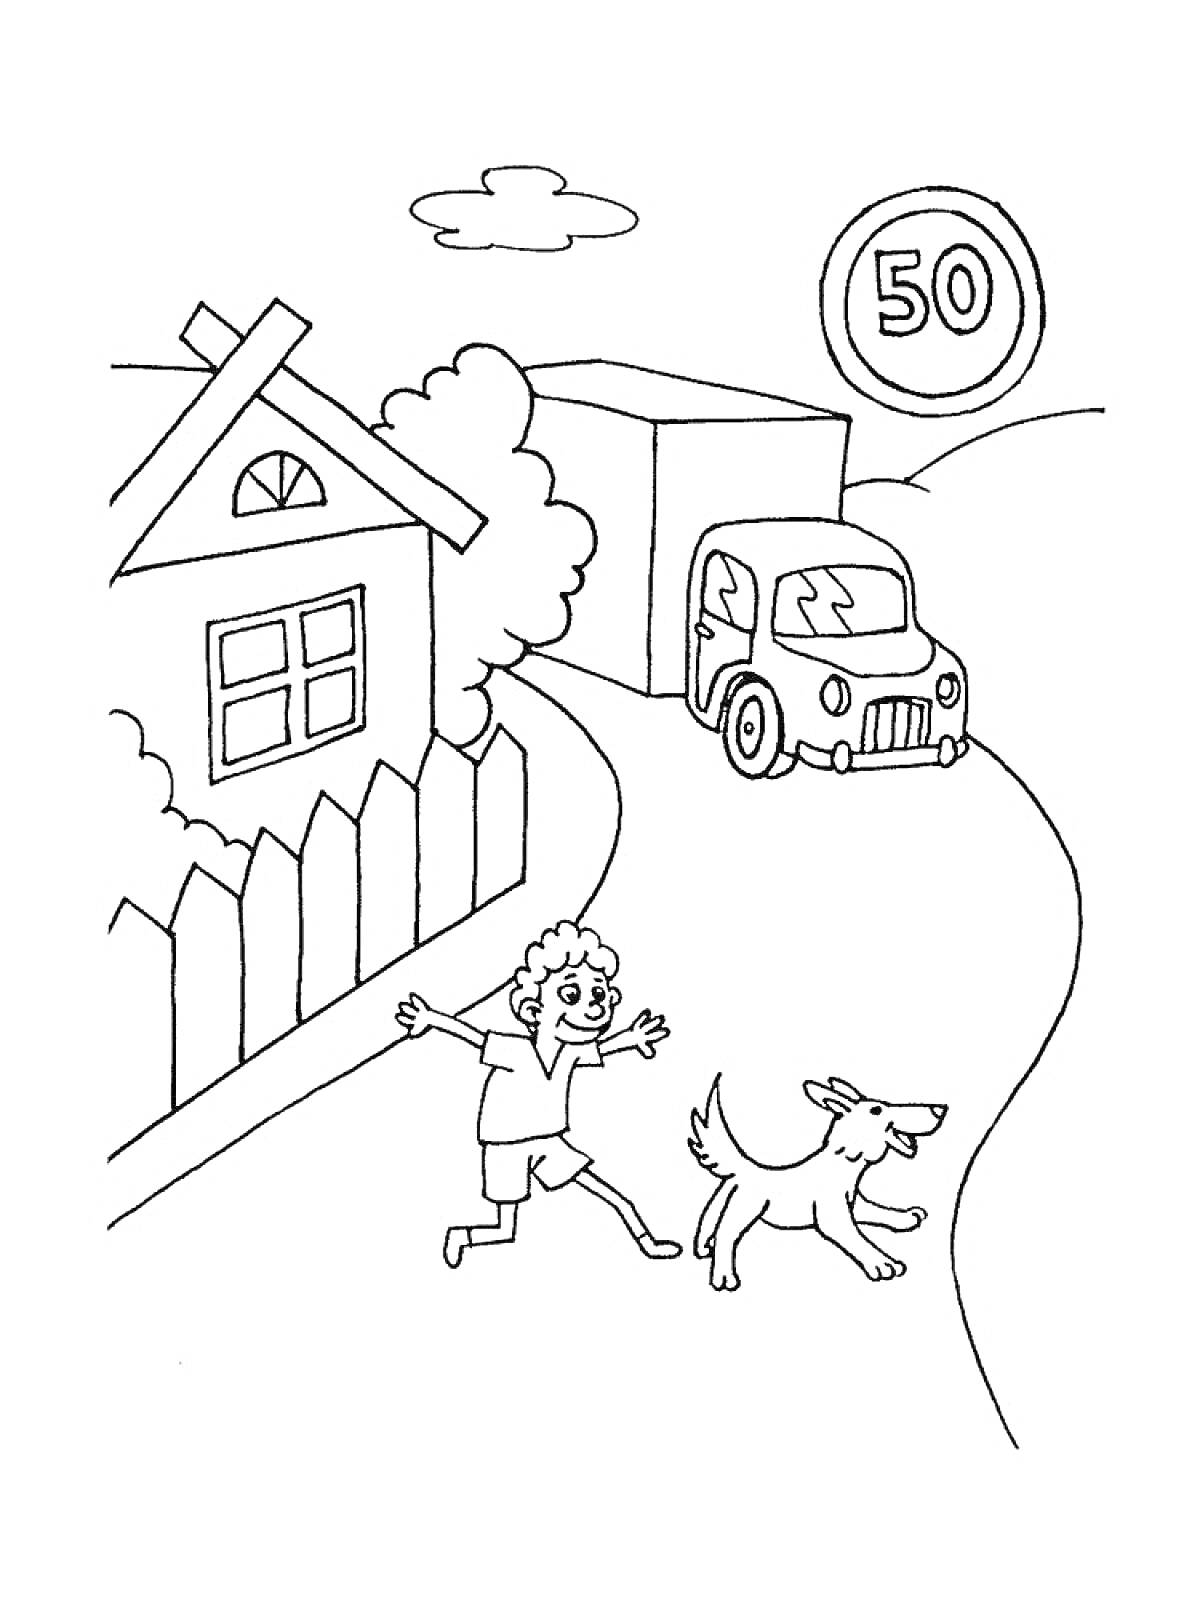 Раскраска Дом, забор, кусты, деревья, дорога, грузовик, легковая машина, ребенок, собака, знак ограничения скорости 50